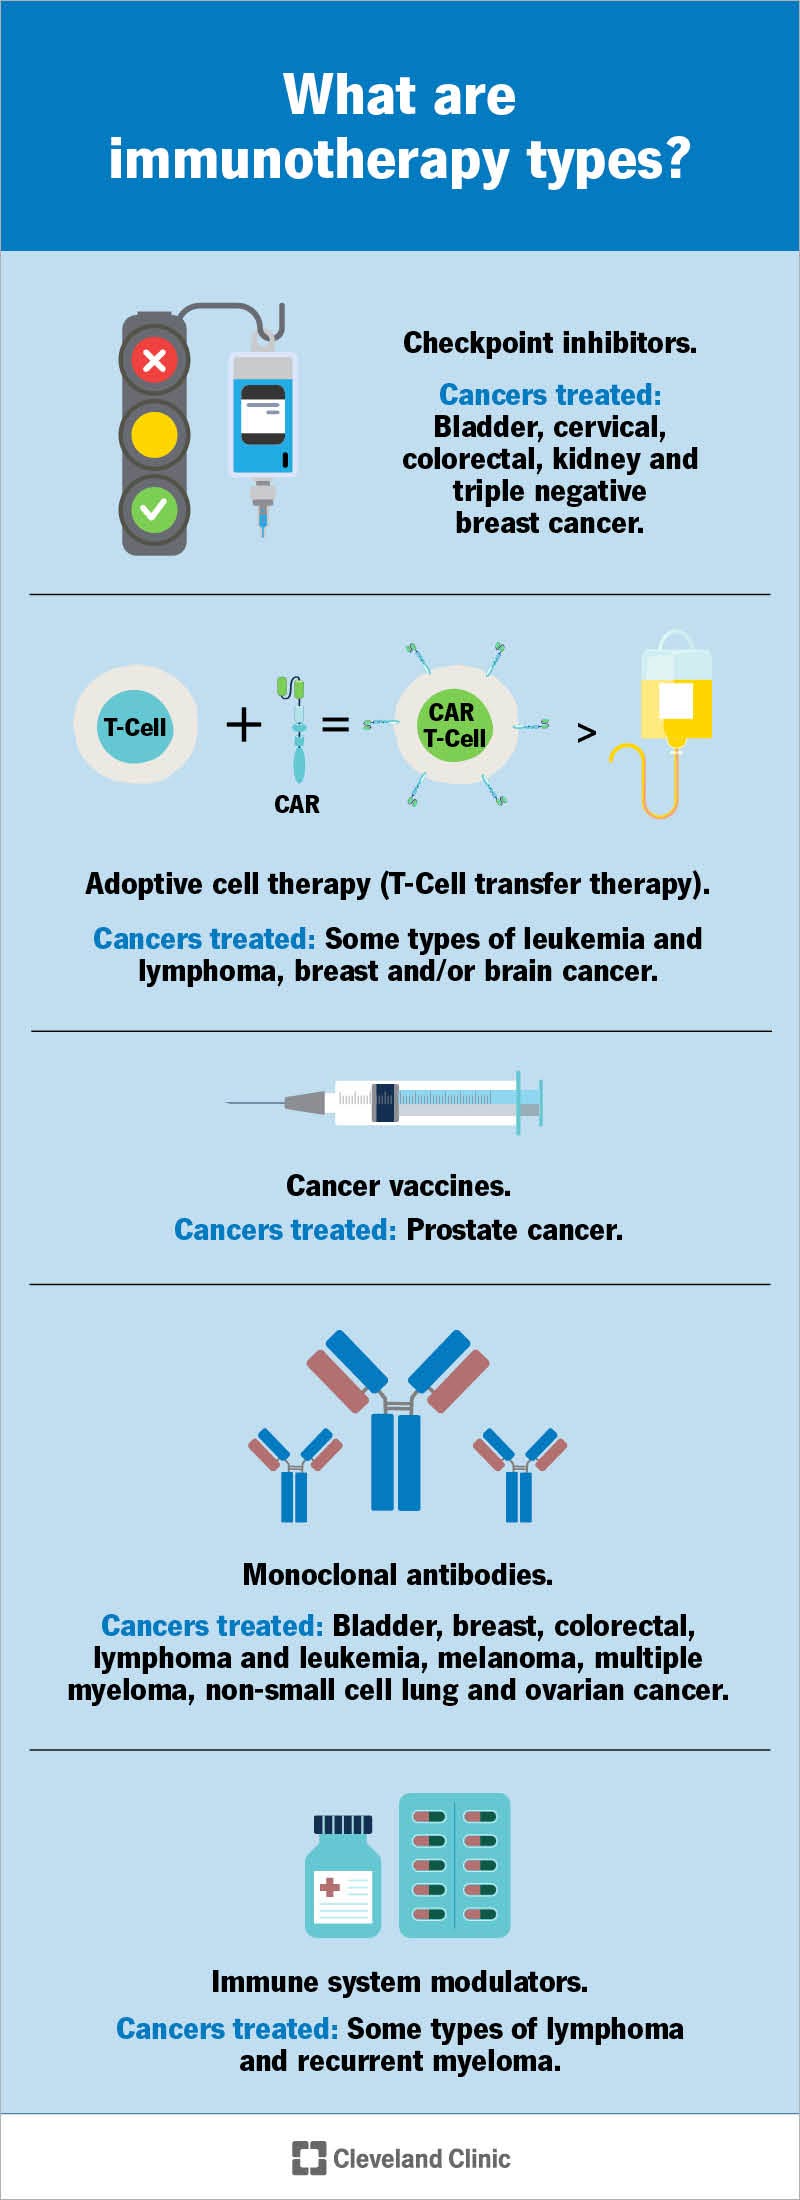 L’immunoterapia è un trattamento contro il cancro che aiuta il sistema immunitario a combattere il cancro.